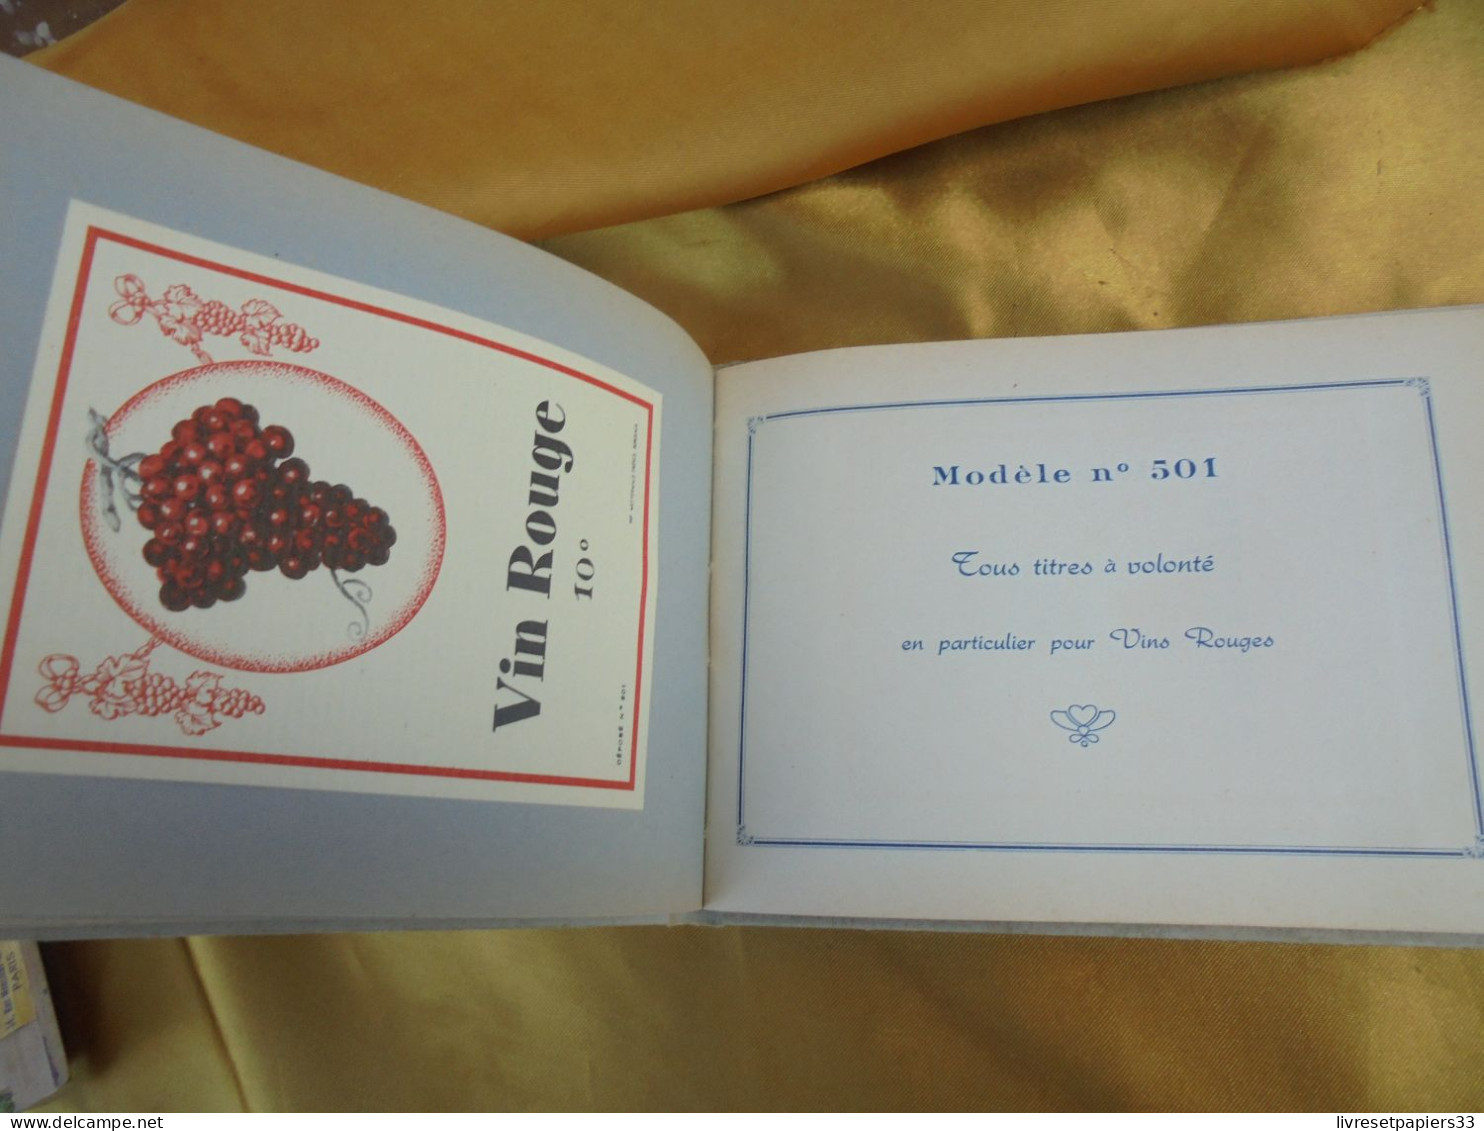 Imprimerie Wetterwald Bordeaux Modéle d'Etiquettes pour Vins Ordinaires et d'Alérie 1955